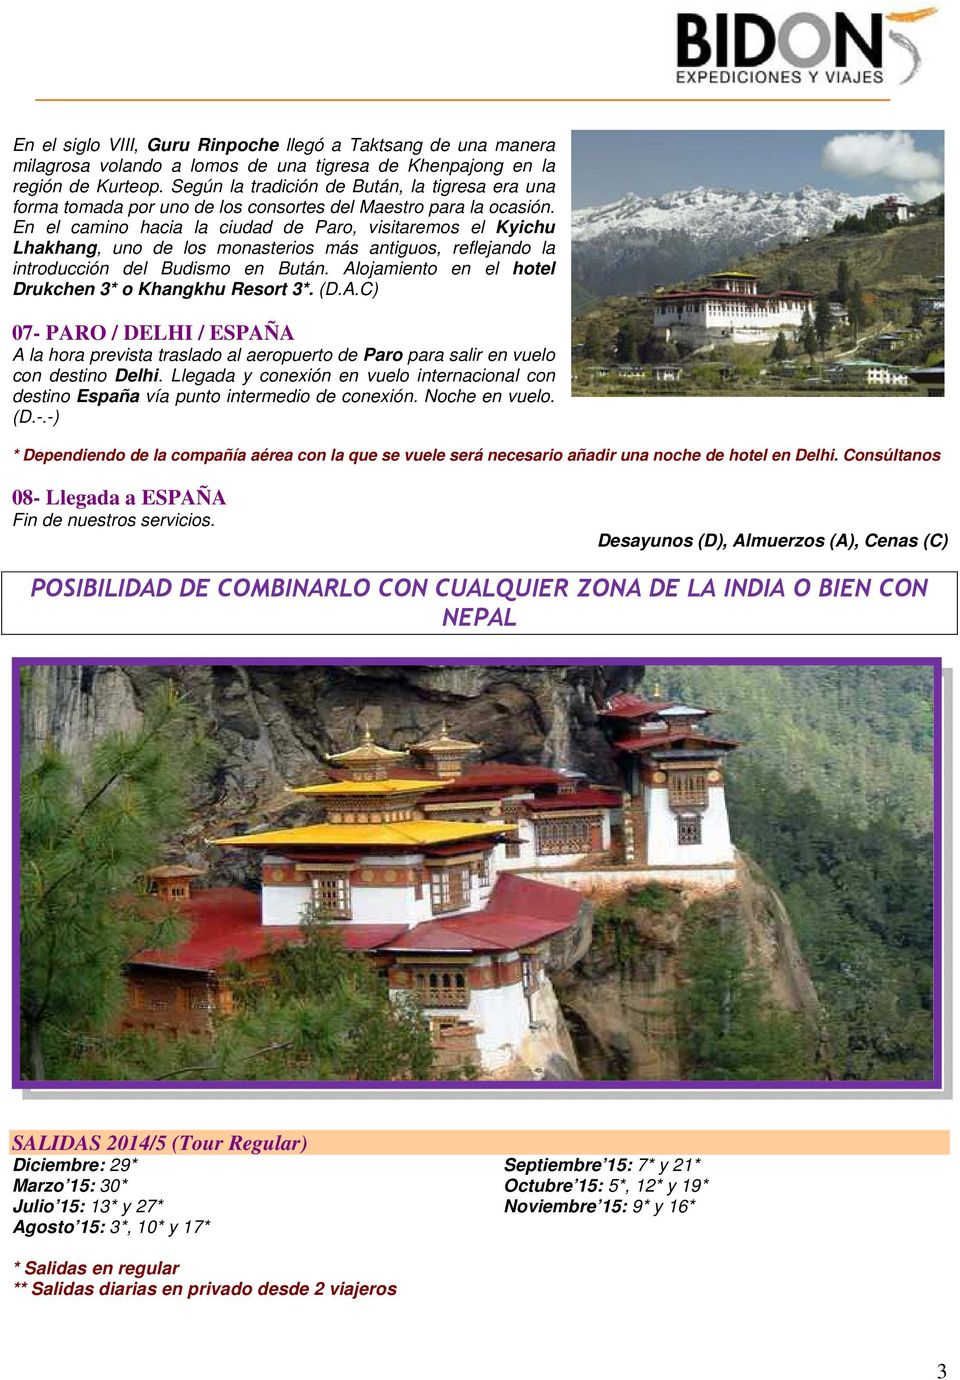 En el camino hacia la ciudad de Paro, visitaremos el Kyichu Lhakhang, uno de los monasterios más antiguos, reflejando la introducción del Budismo en Bután.